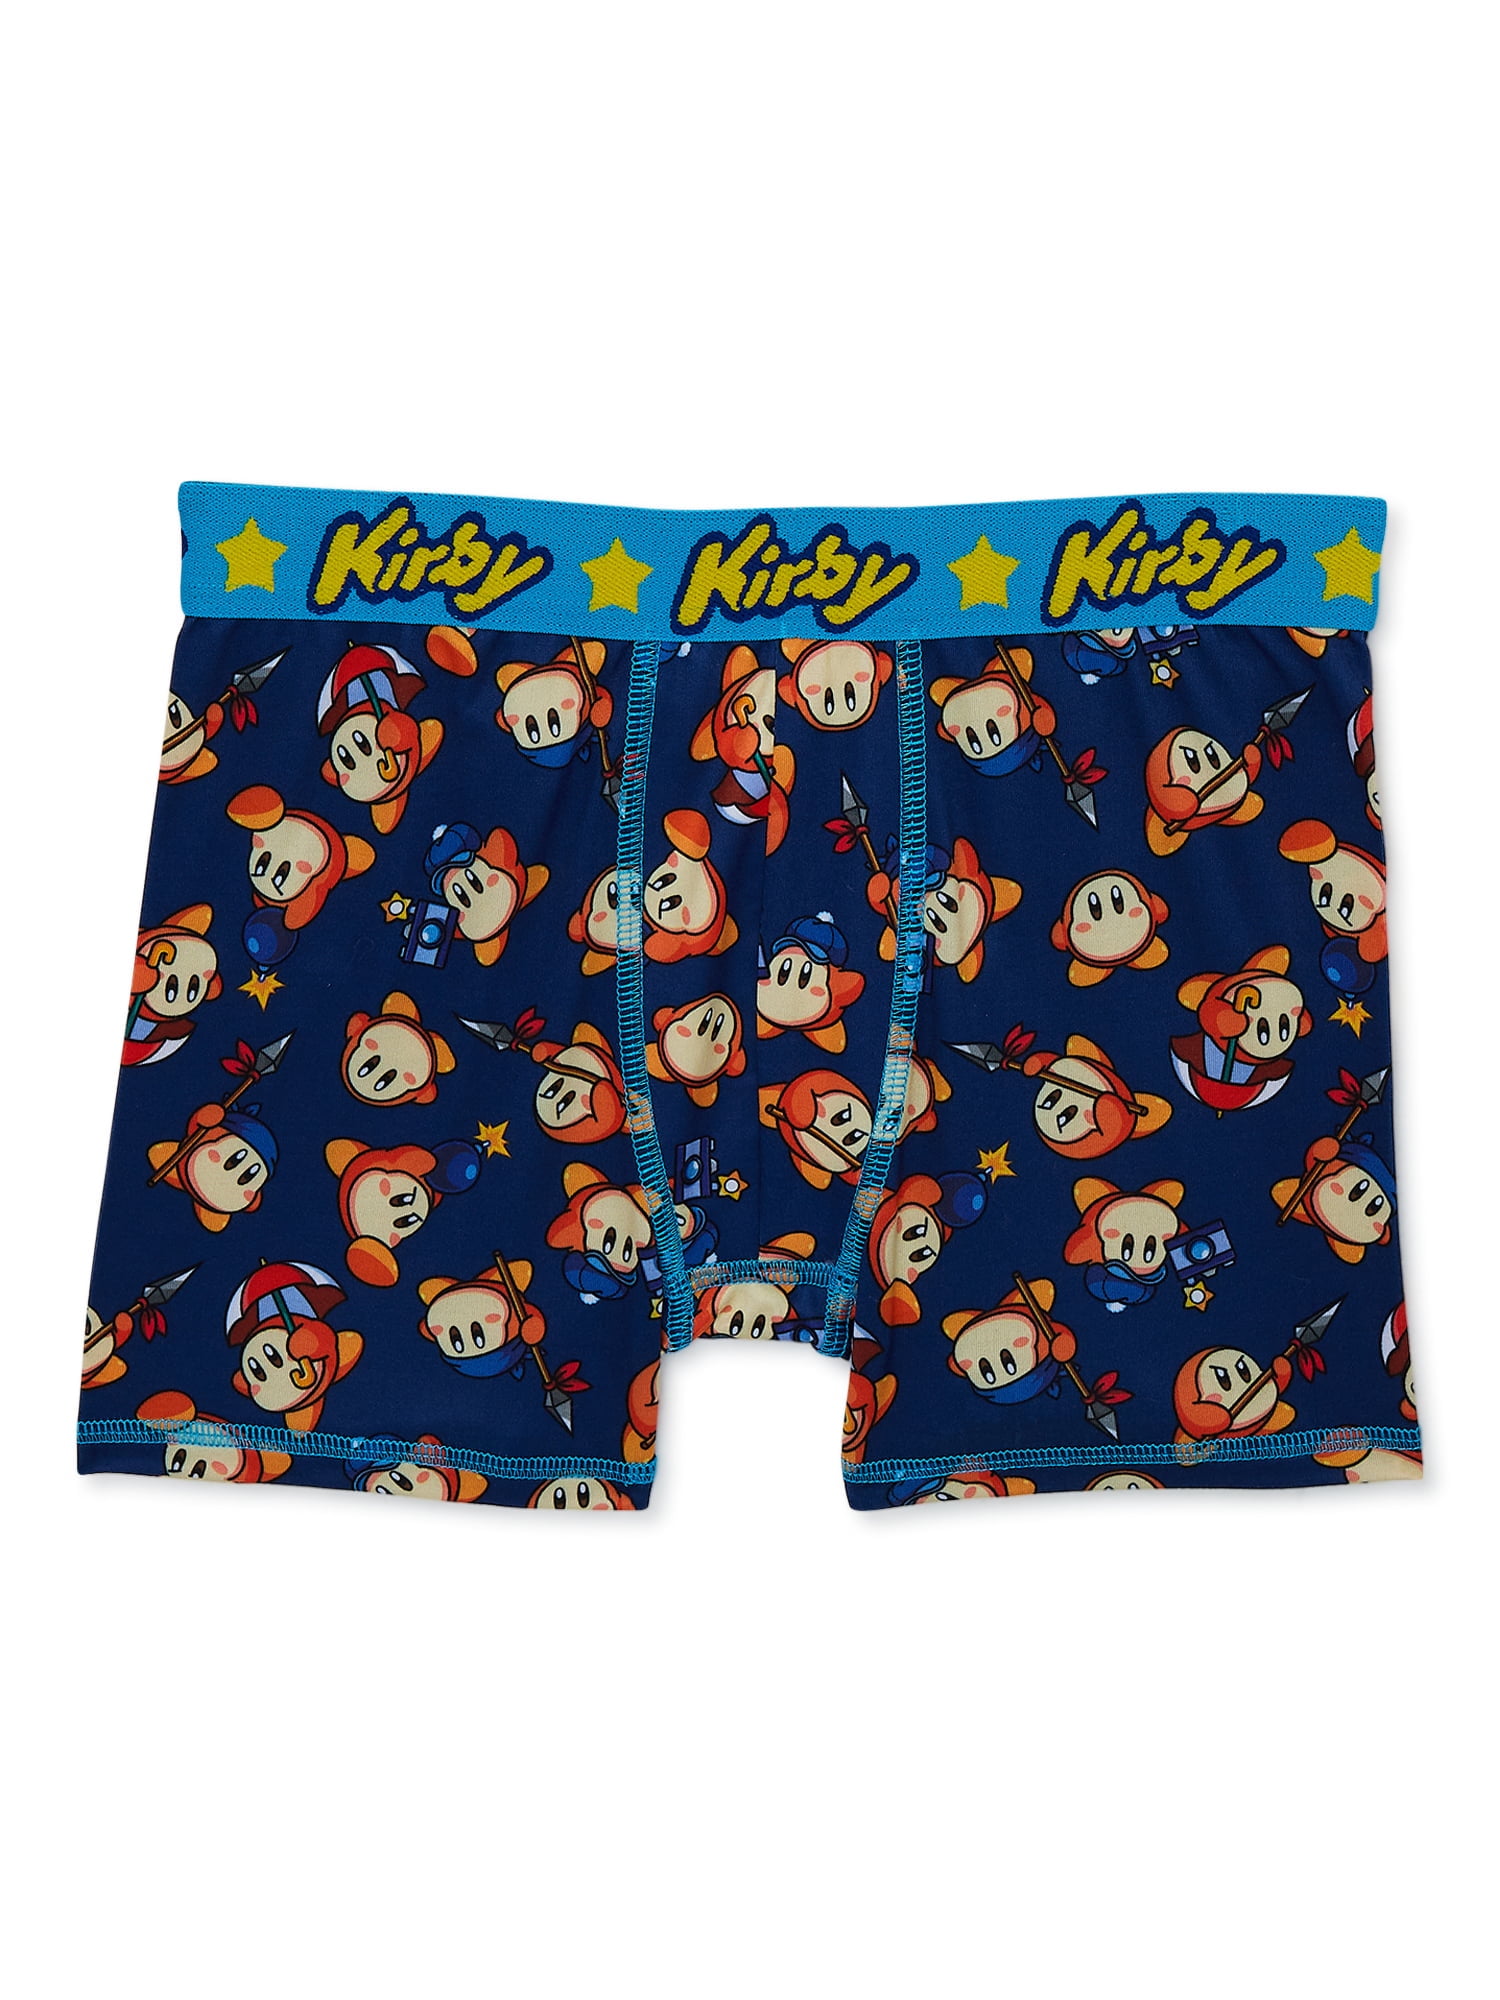 Kirby Boys Boxer Brief Underwear, 4-Pack, Sizes XS-XL - Walmart